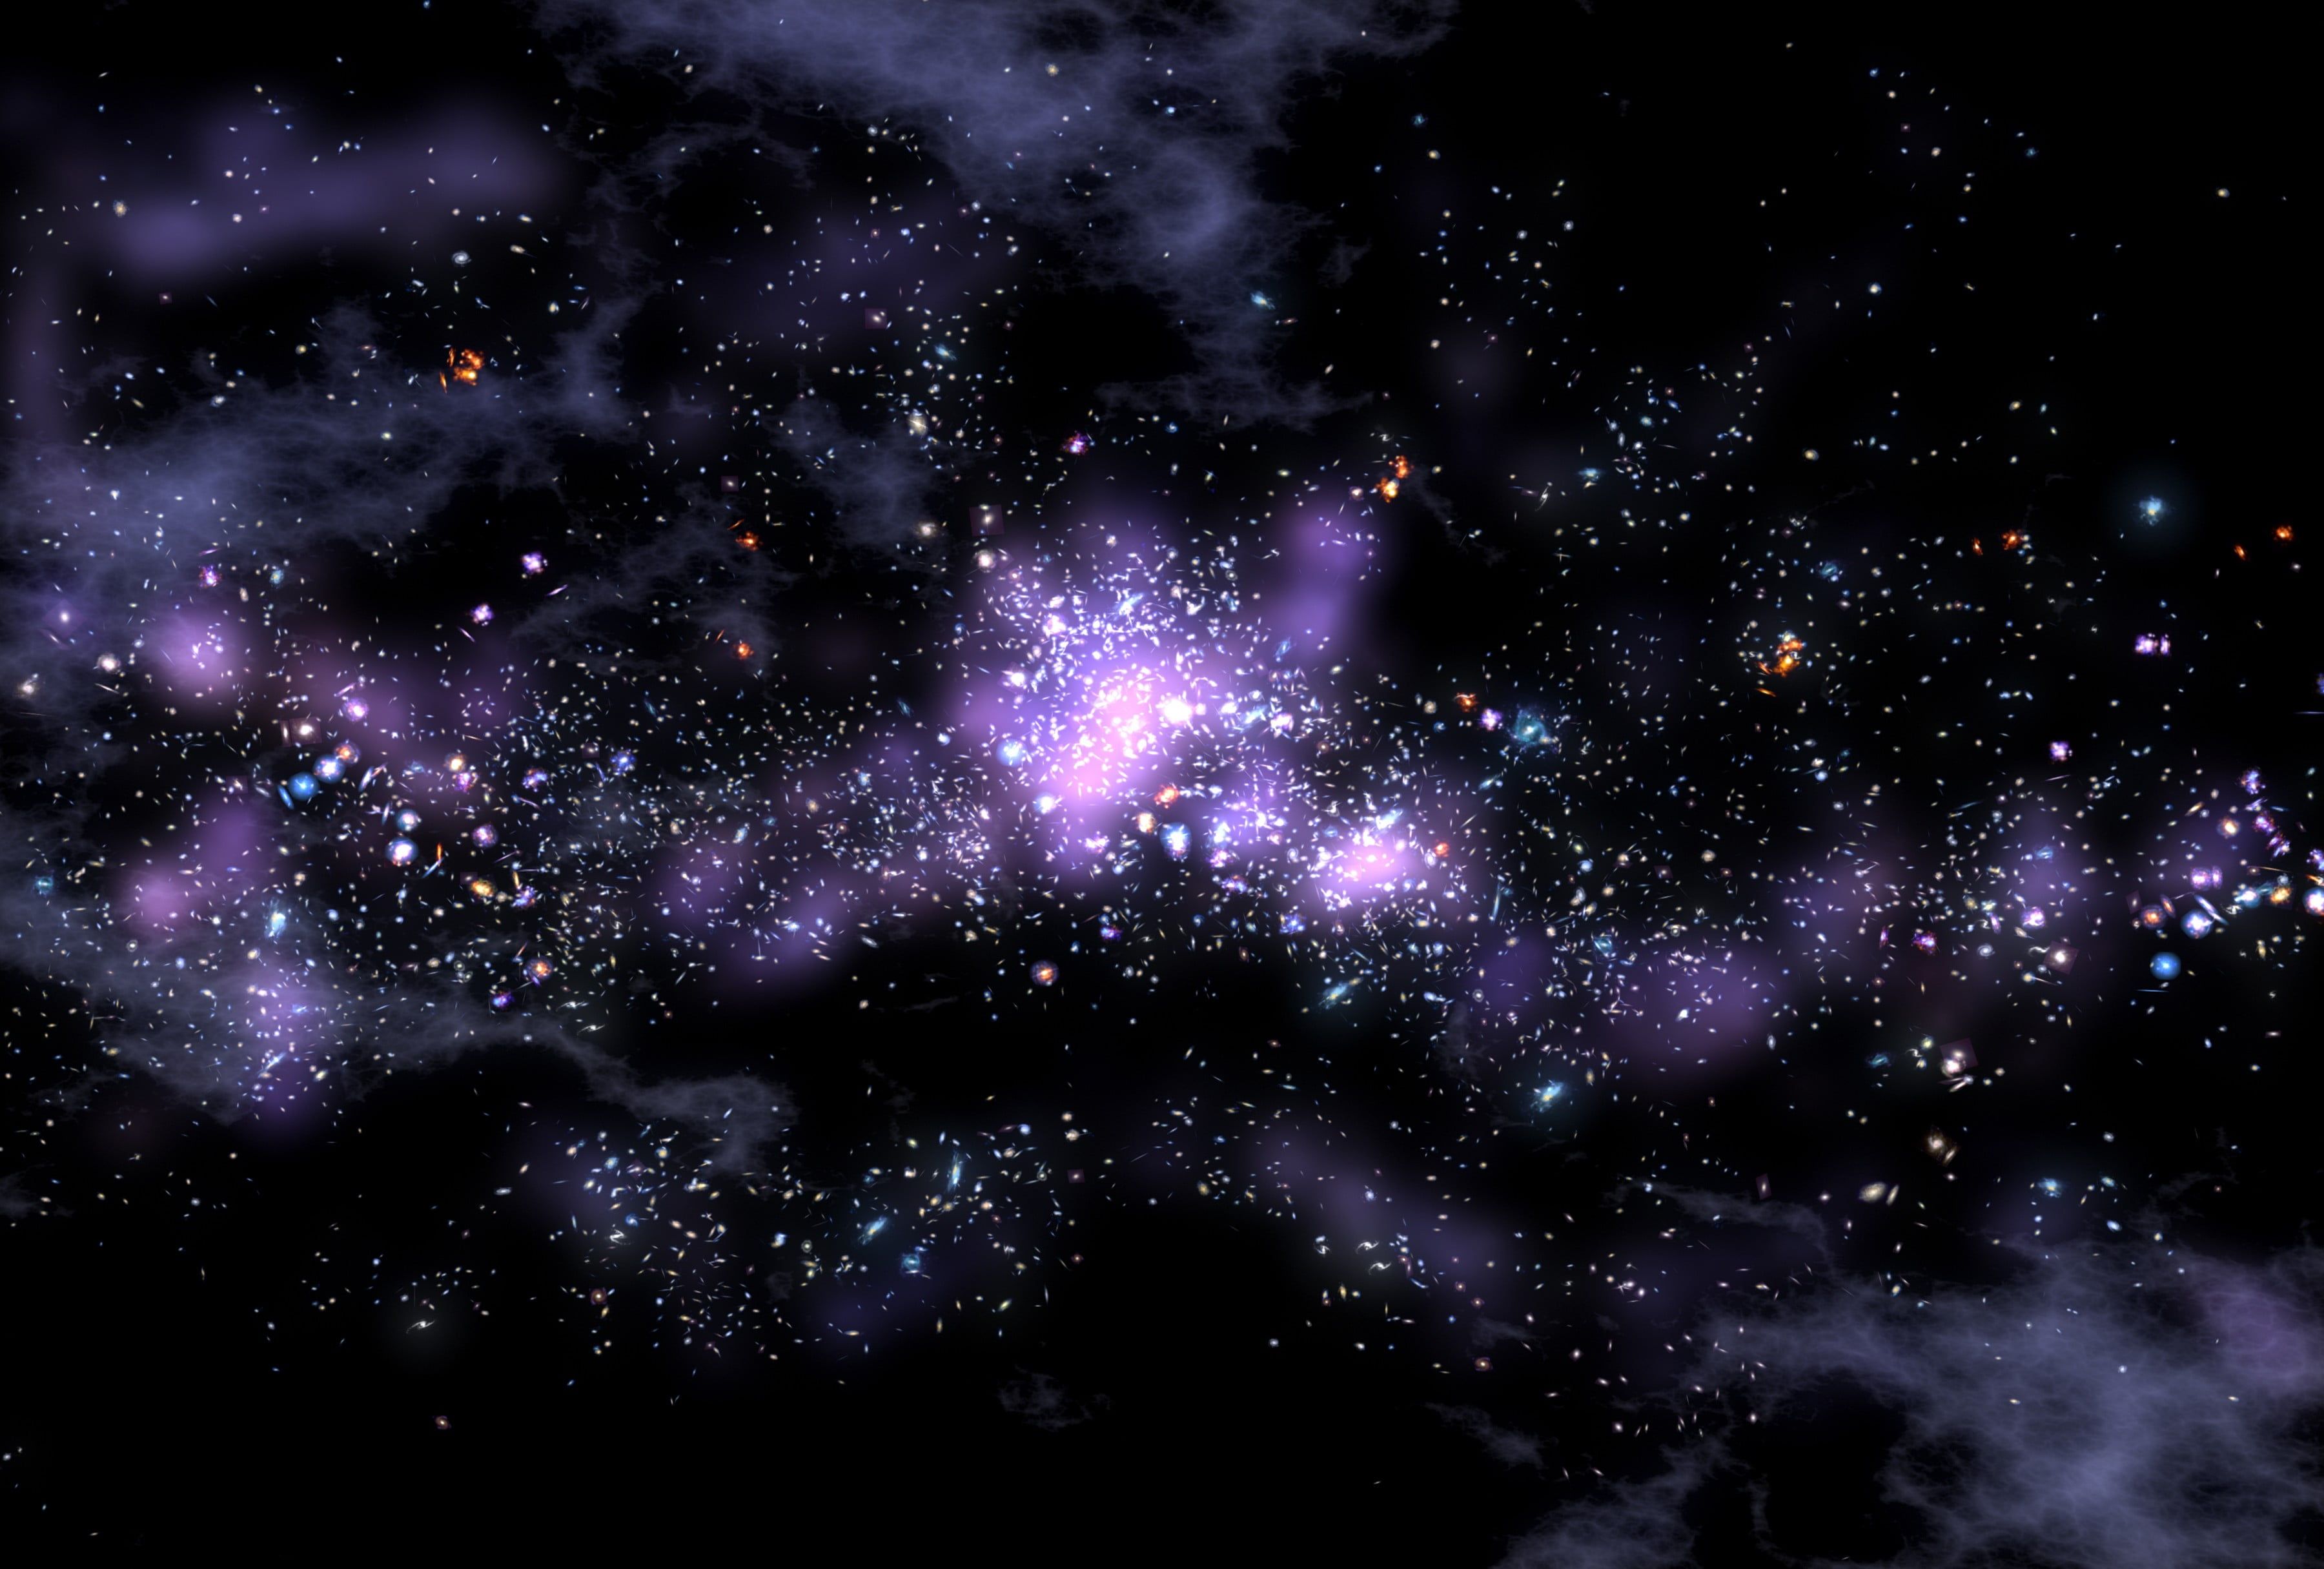 Nếu bạn yêu thích vũ trụ và muốn trang trí màn hình điện thoại của mình với một hình nền đẹp, hãy ghé thăm trang WallpaperDog. Tại đây, bạn sẽ tìm thấy hình nền vũ trụ đen tím đầy bí ẩn và cuốn hút.